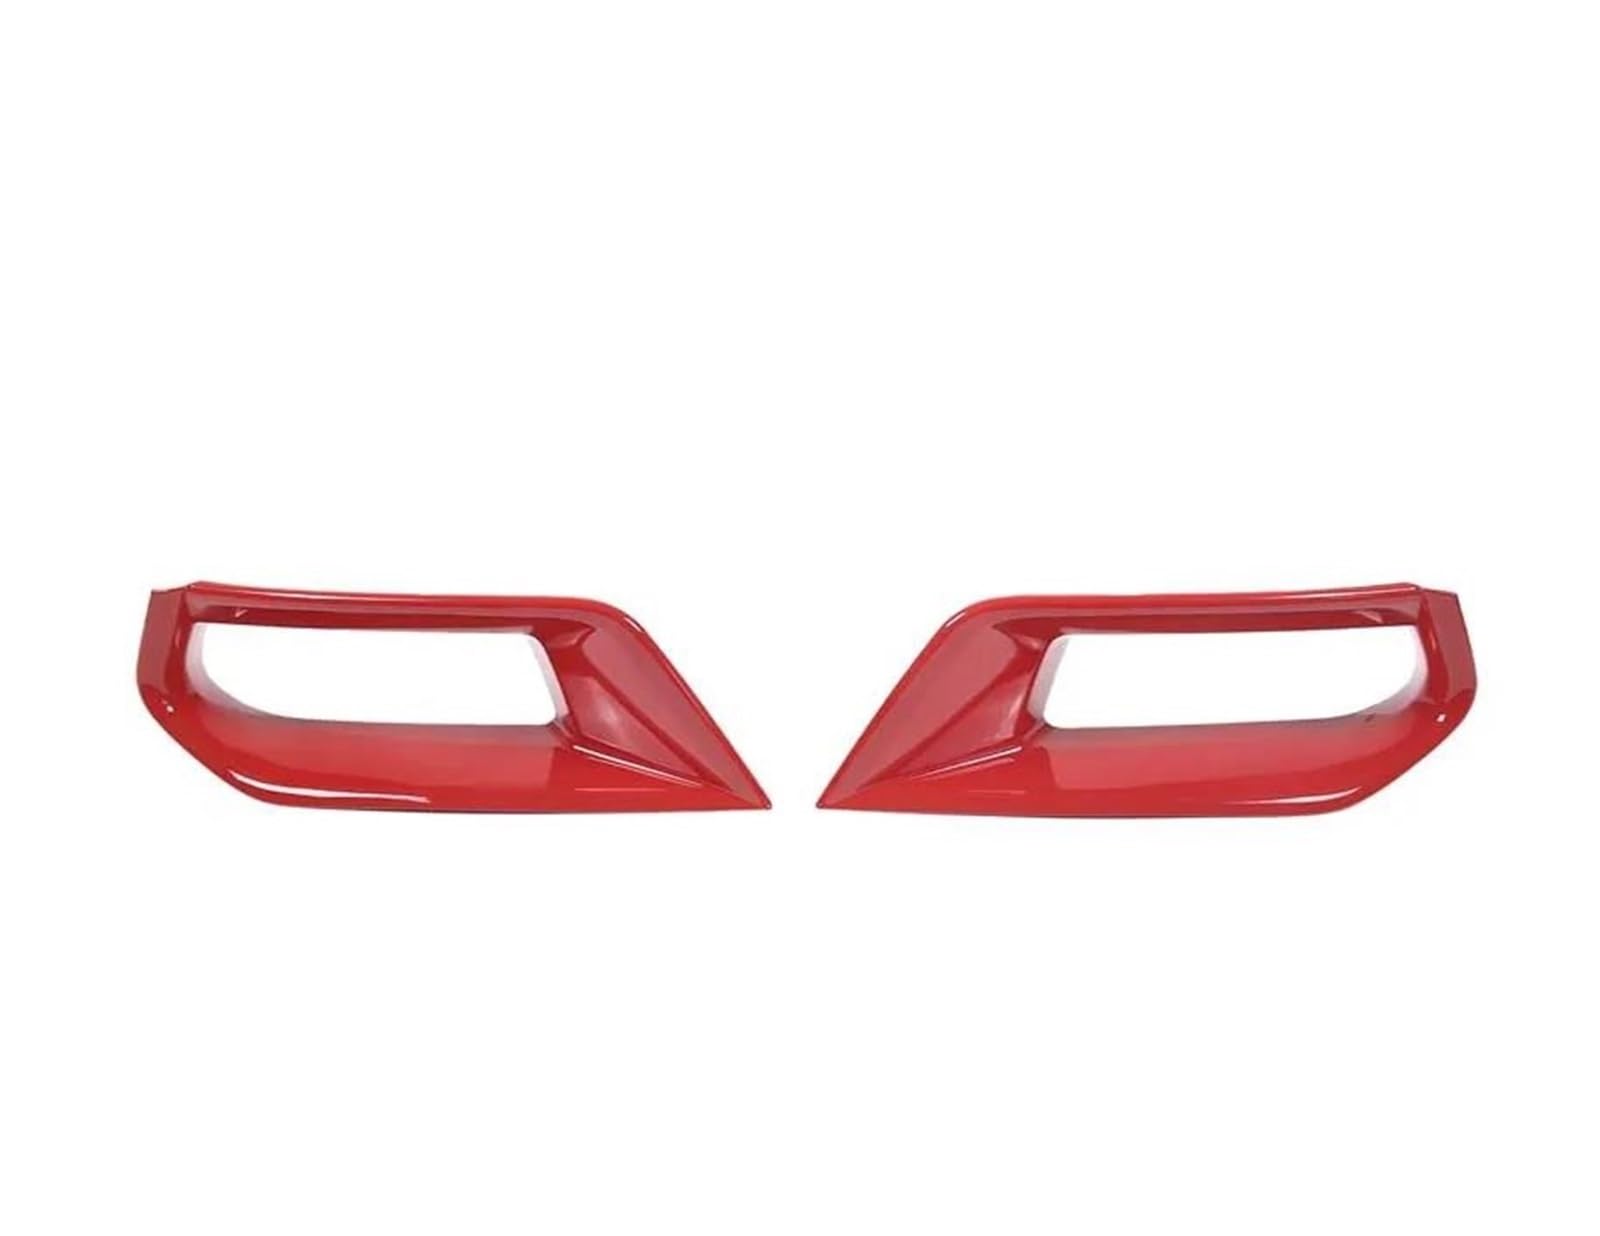 UYCHYTQR Für Chevrolet Für Corvette C7 Z06 2014-2019 Frontstoßstangen Lufteinlass Dekorrahmen Außenformteil Zubehör Auto-Innenleisten(Rot) von UYCHYTQR